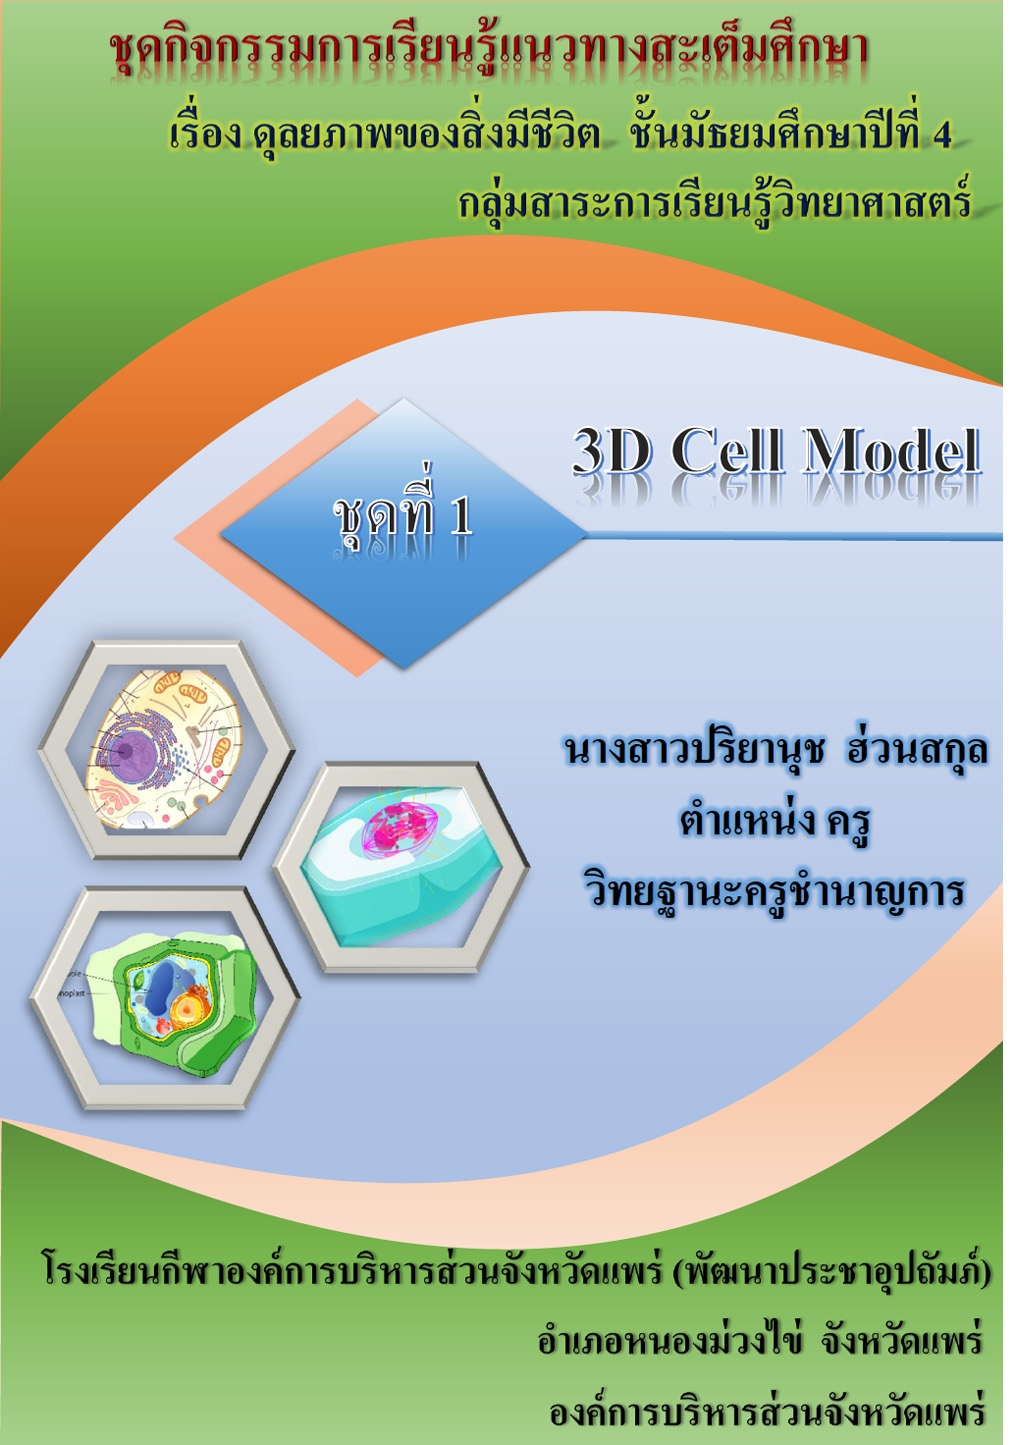 ชุดกิจกรรมการเรียนรู้แนวทางสะเต็มศึกษา ชั้นมัธยมศึกษาปีที่ 4 ชุดที่ 1 เรื่อง 3D Cell Model ผลงานครูปริยานุช ฮ่วนสกุล